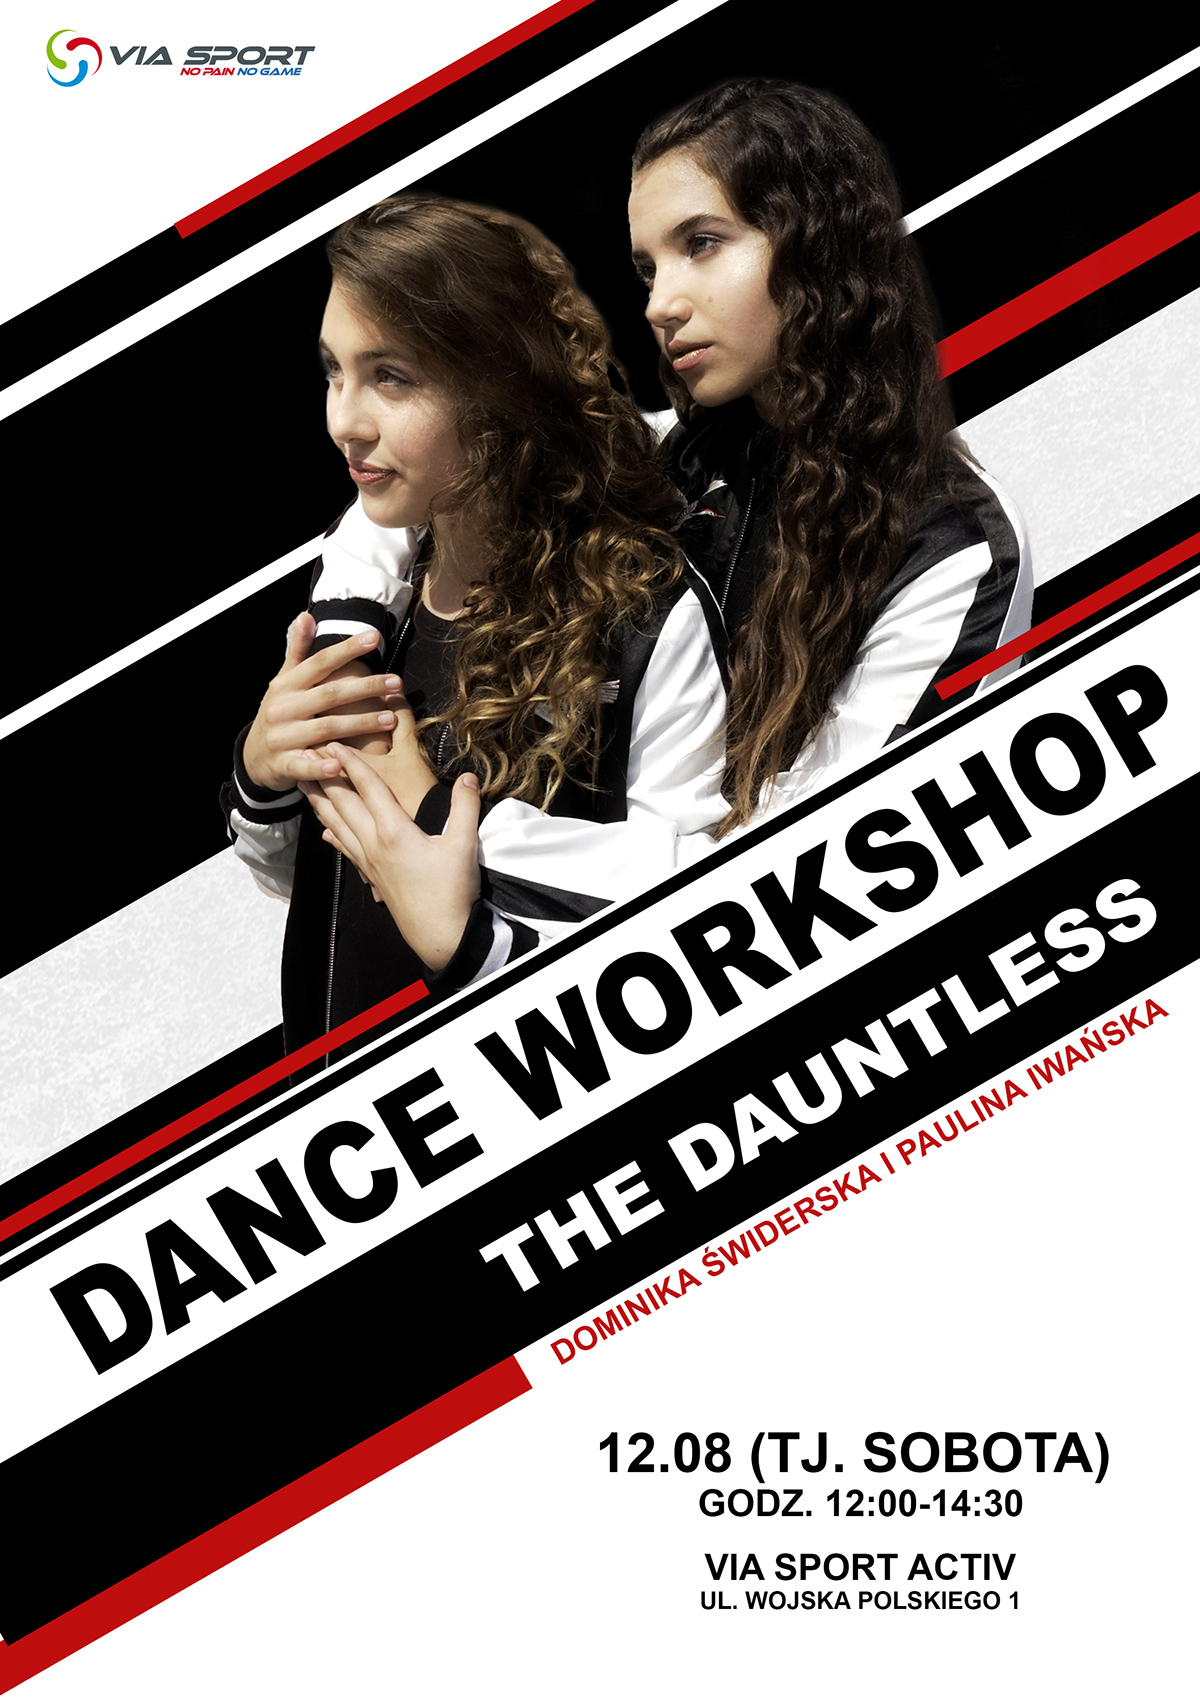 DANCE   Workshop poster